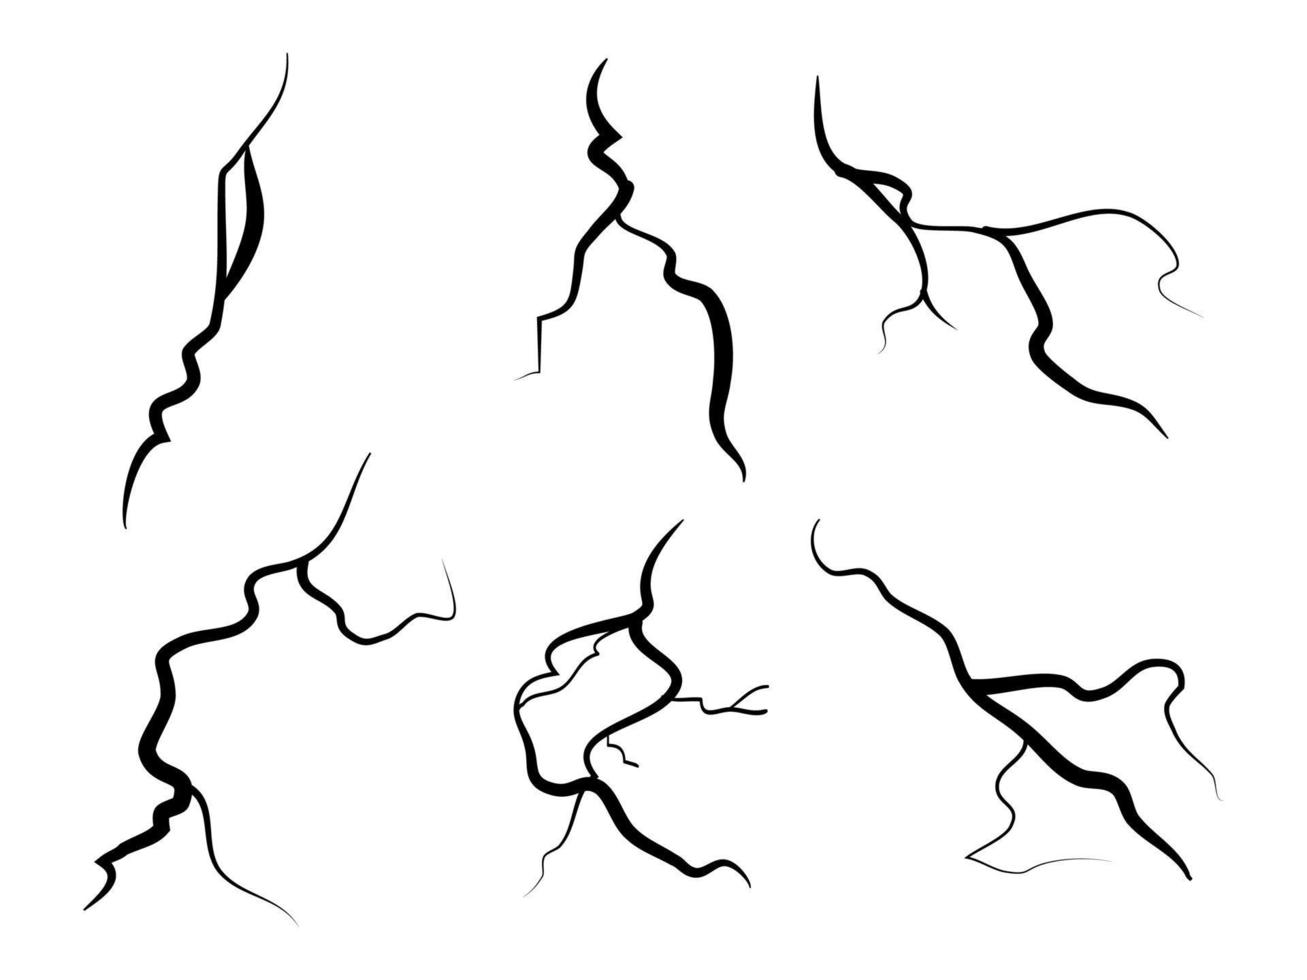 handgezeichnete rissige wand, boden, glas, ei. Doodle-Pause-Set. Vektor-Illustration vektor